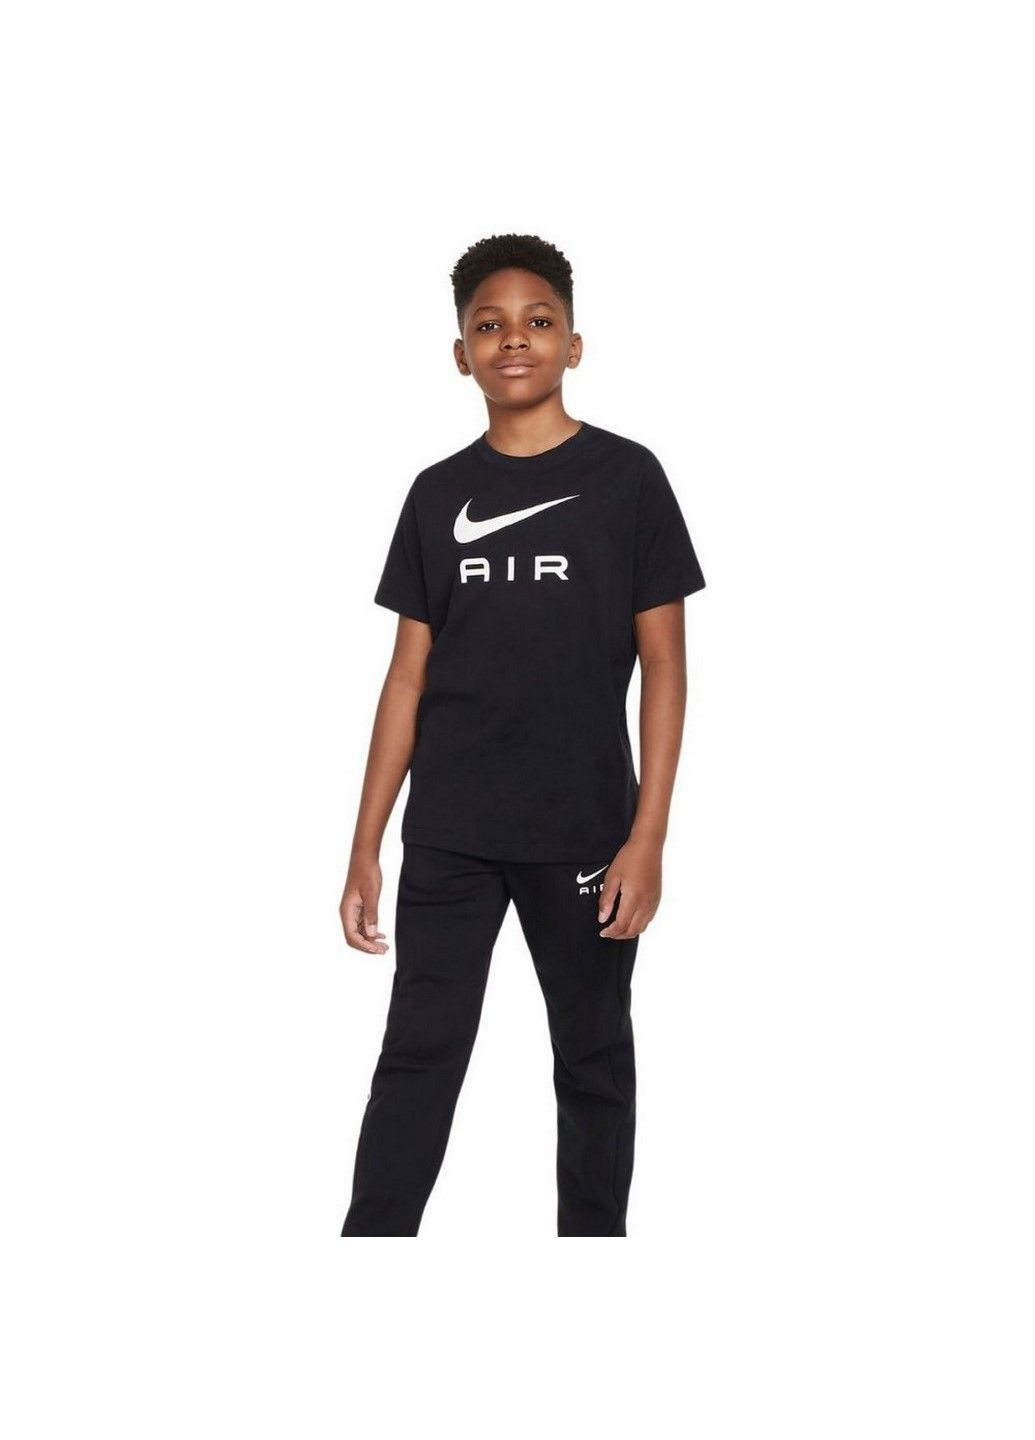 Чорна демісезонна футболка дитяча k nsw tee air dv3934-010 Nike